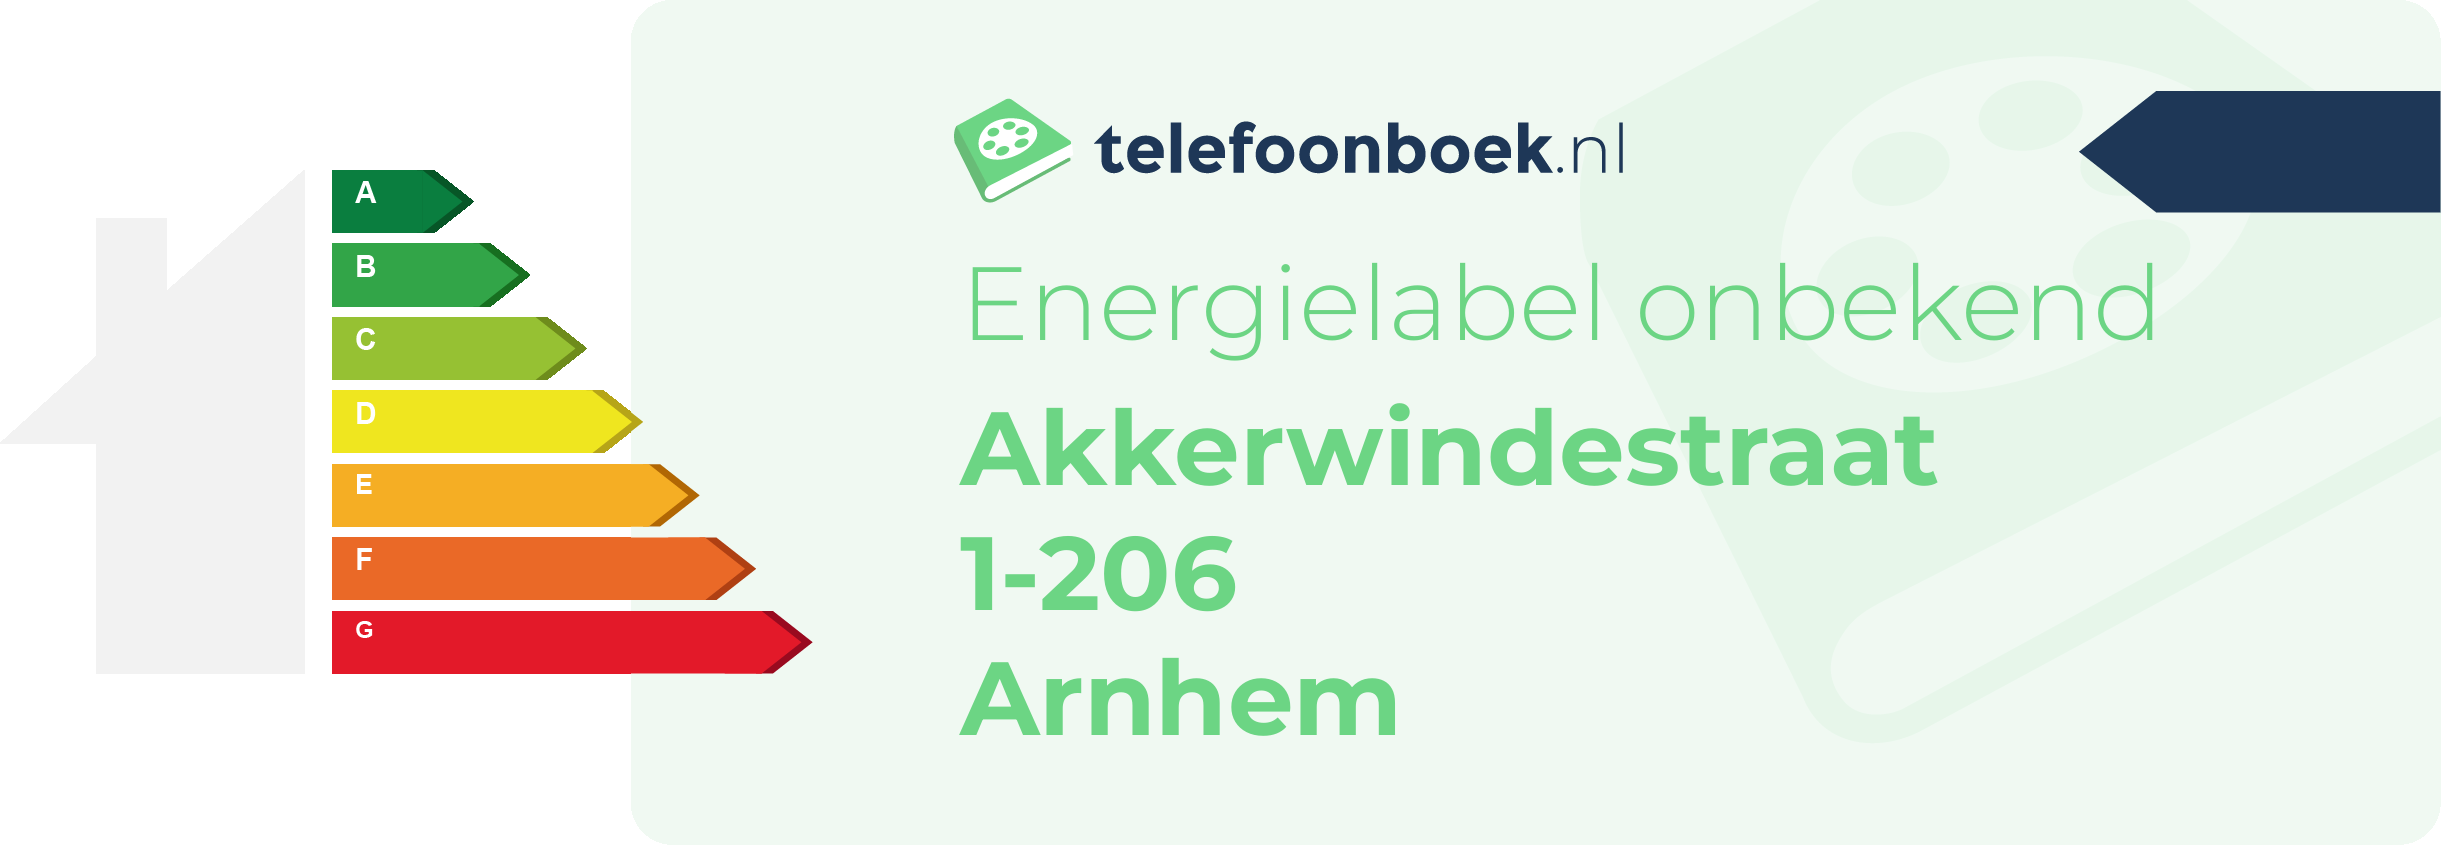 Energielabel Akkerwindestraat 1-206 Arnhem